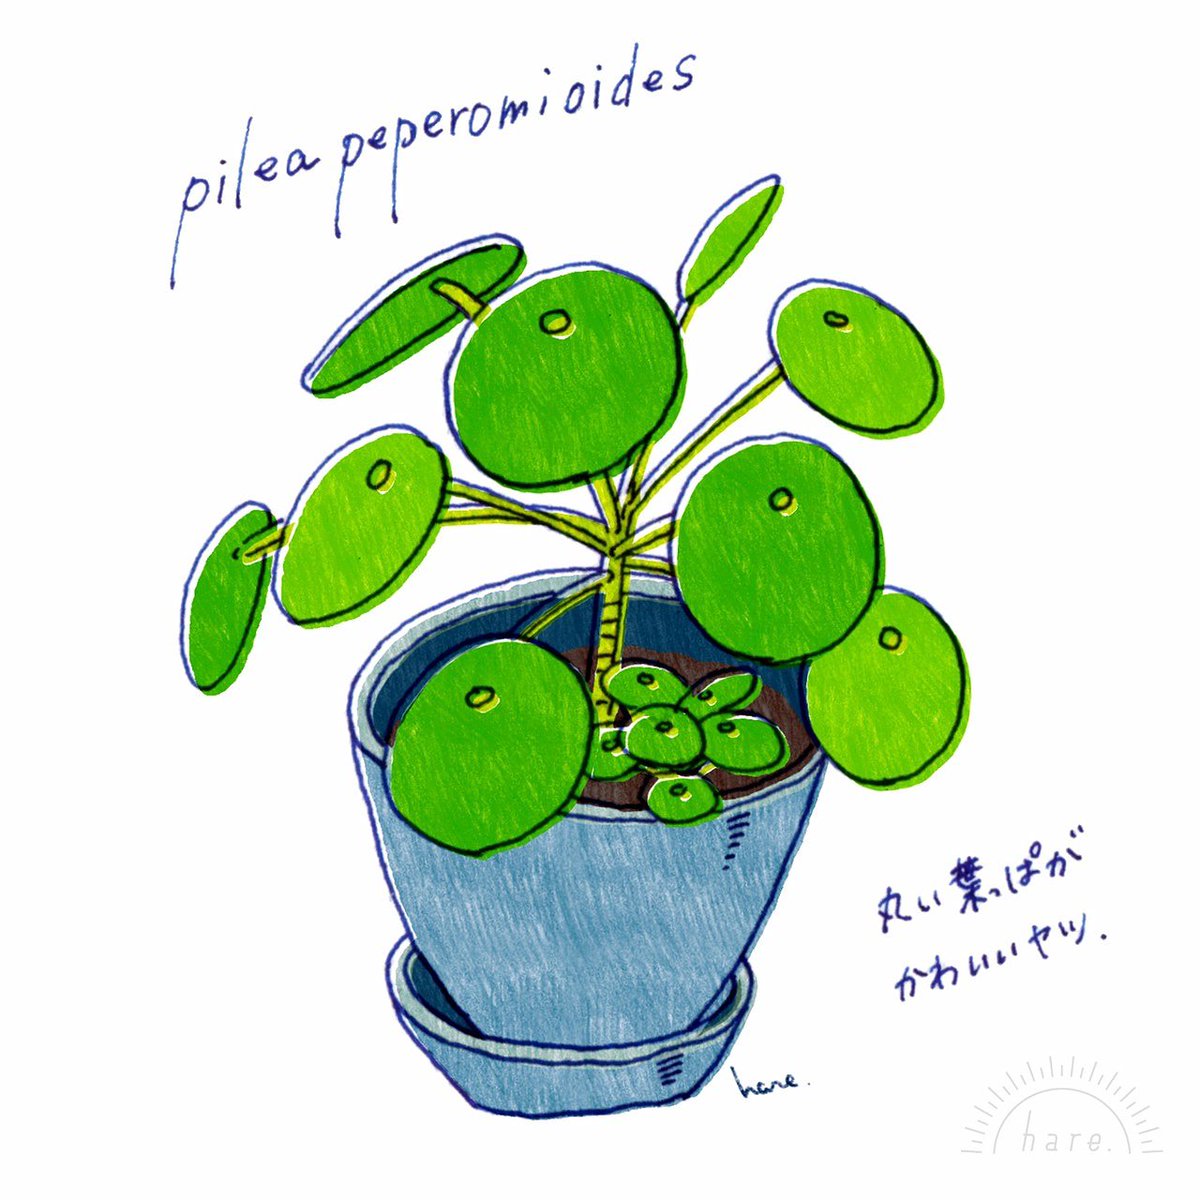 おくちはる イラスト デザインする人 我が家の観葉植物の中でも アイドル的存在の ピレアペペロミオイデス 大きくなりました イラスト Illustration Illustrate 絵 Drawing ピレアペペロミオイデス ピレア ペペロミオイデス Peperomioides